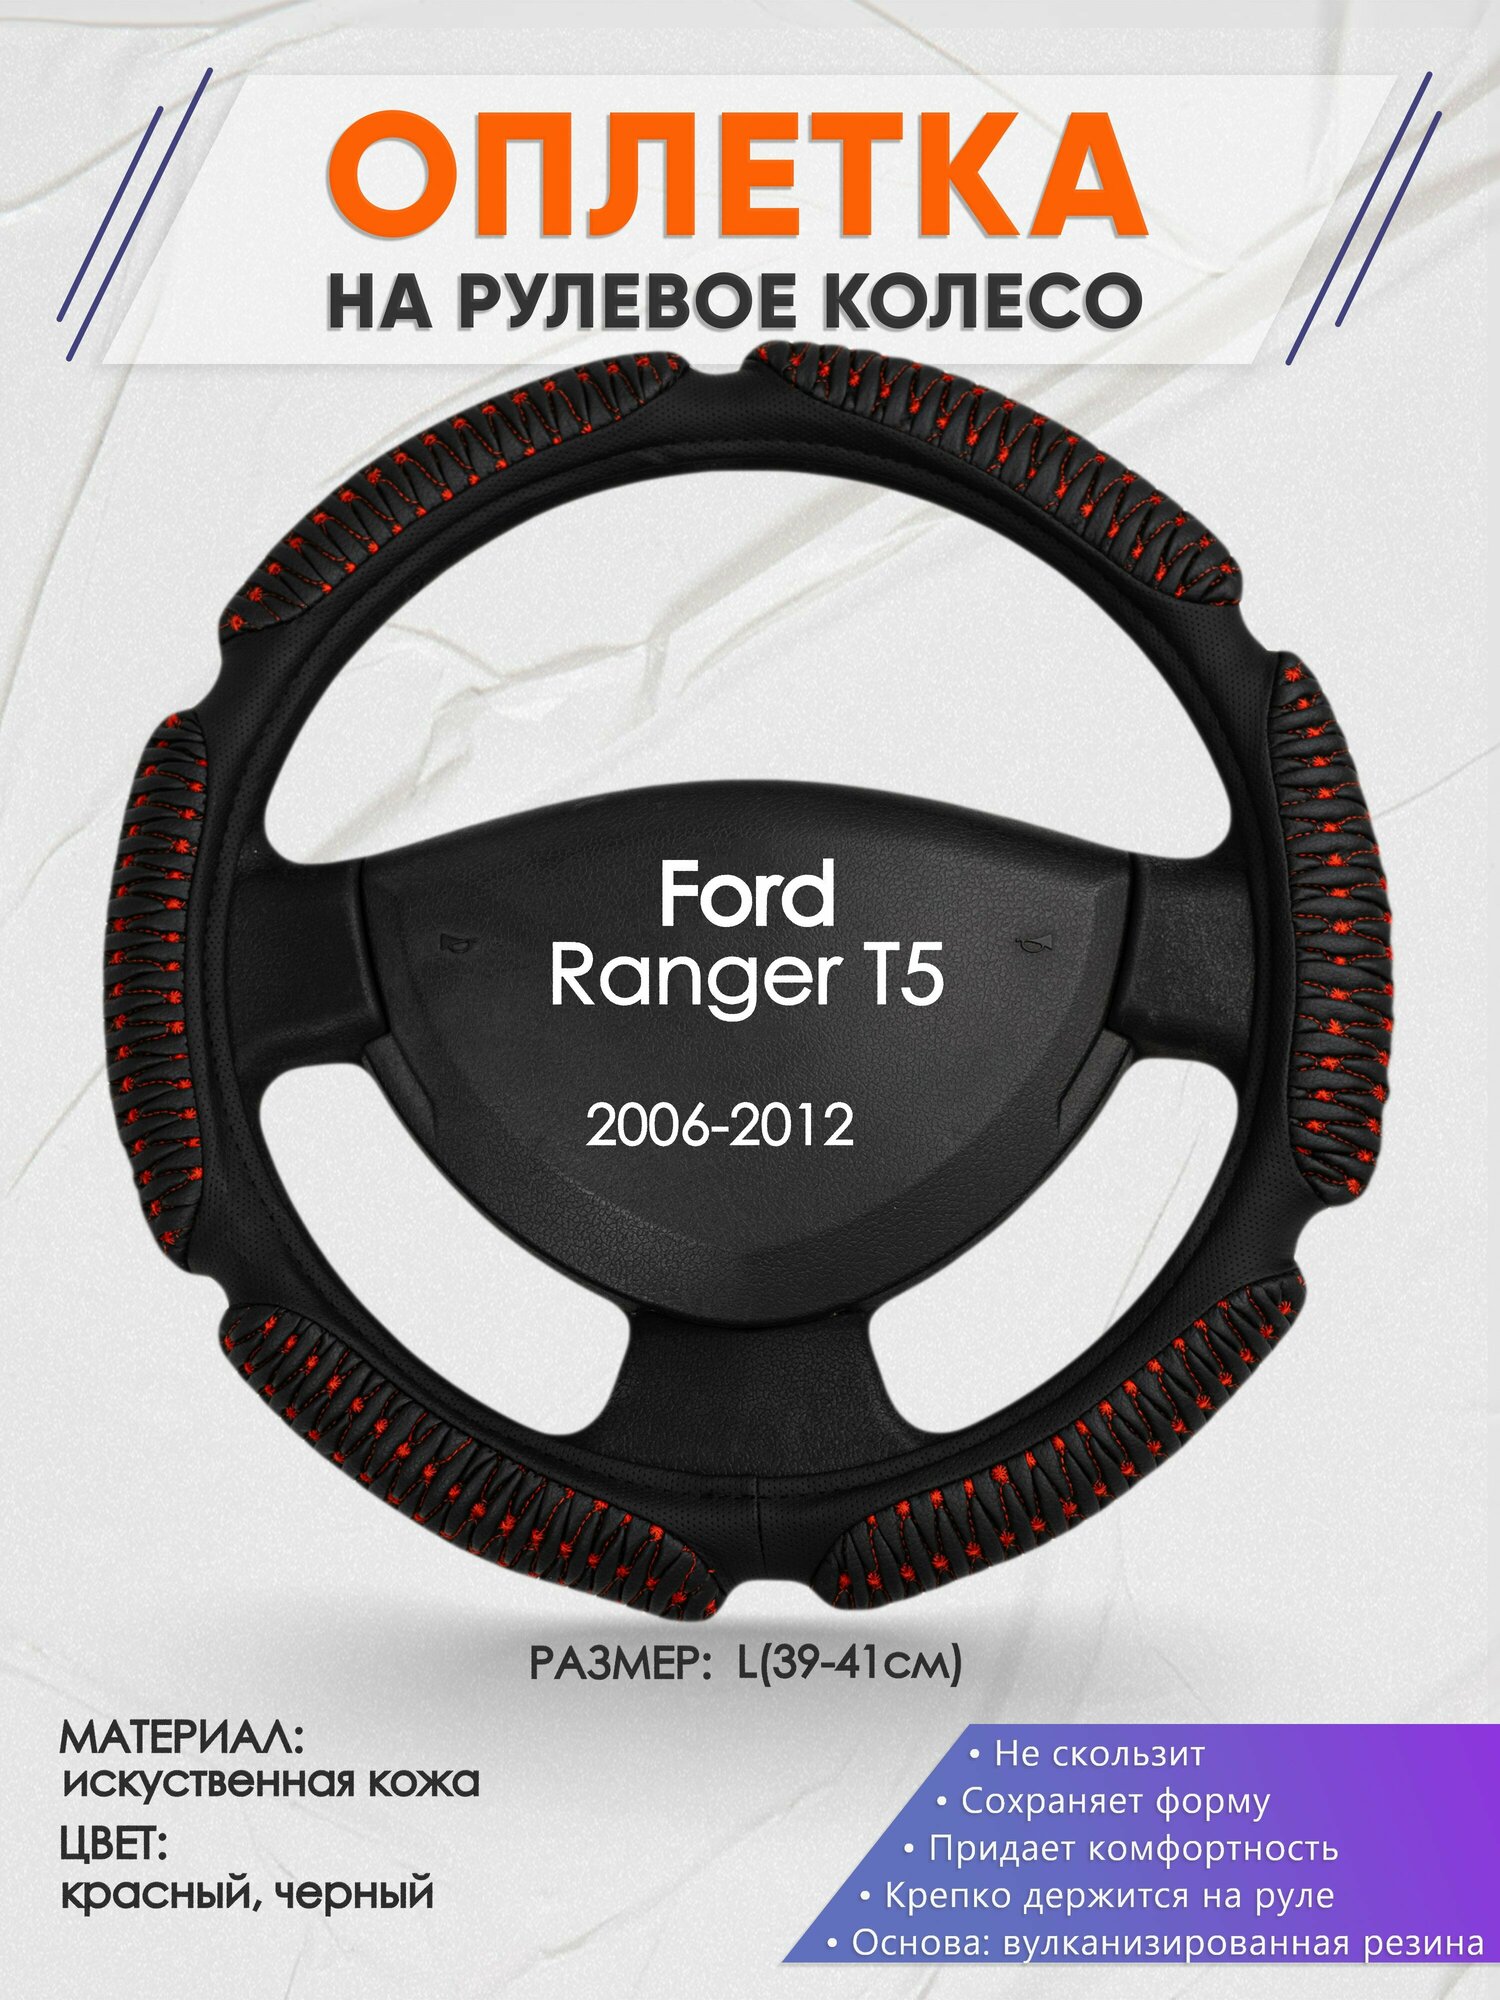 Оплетка на руль для Ford Ranger Т5(Форд Рейнджер Т5) 2006-2012, L(39-41см), Искусственная кожа 01